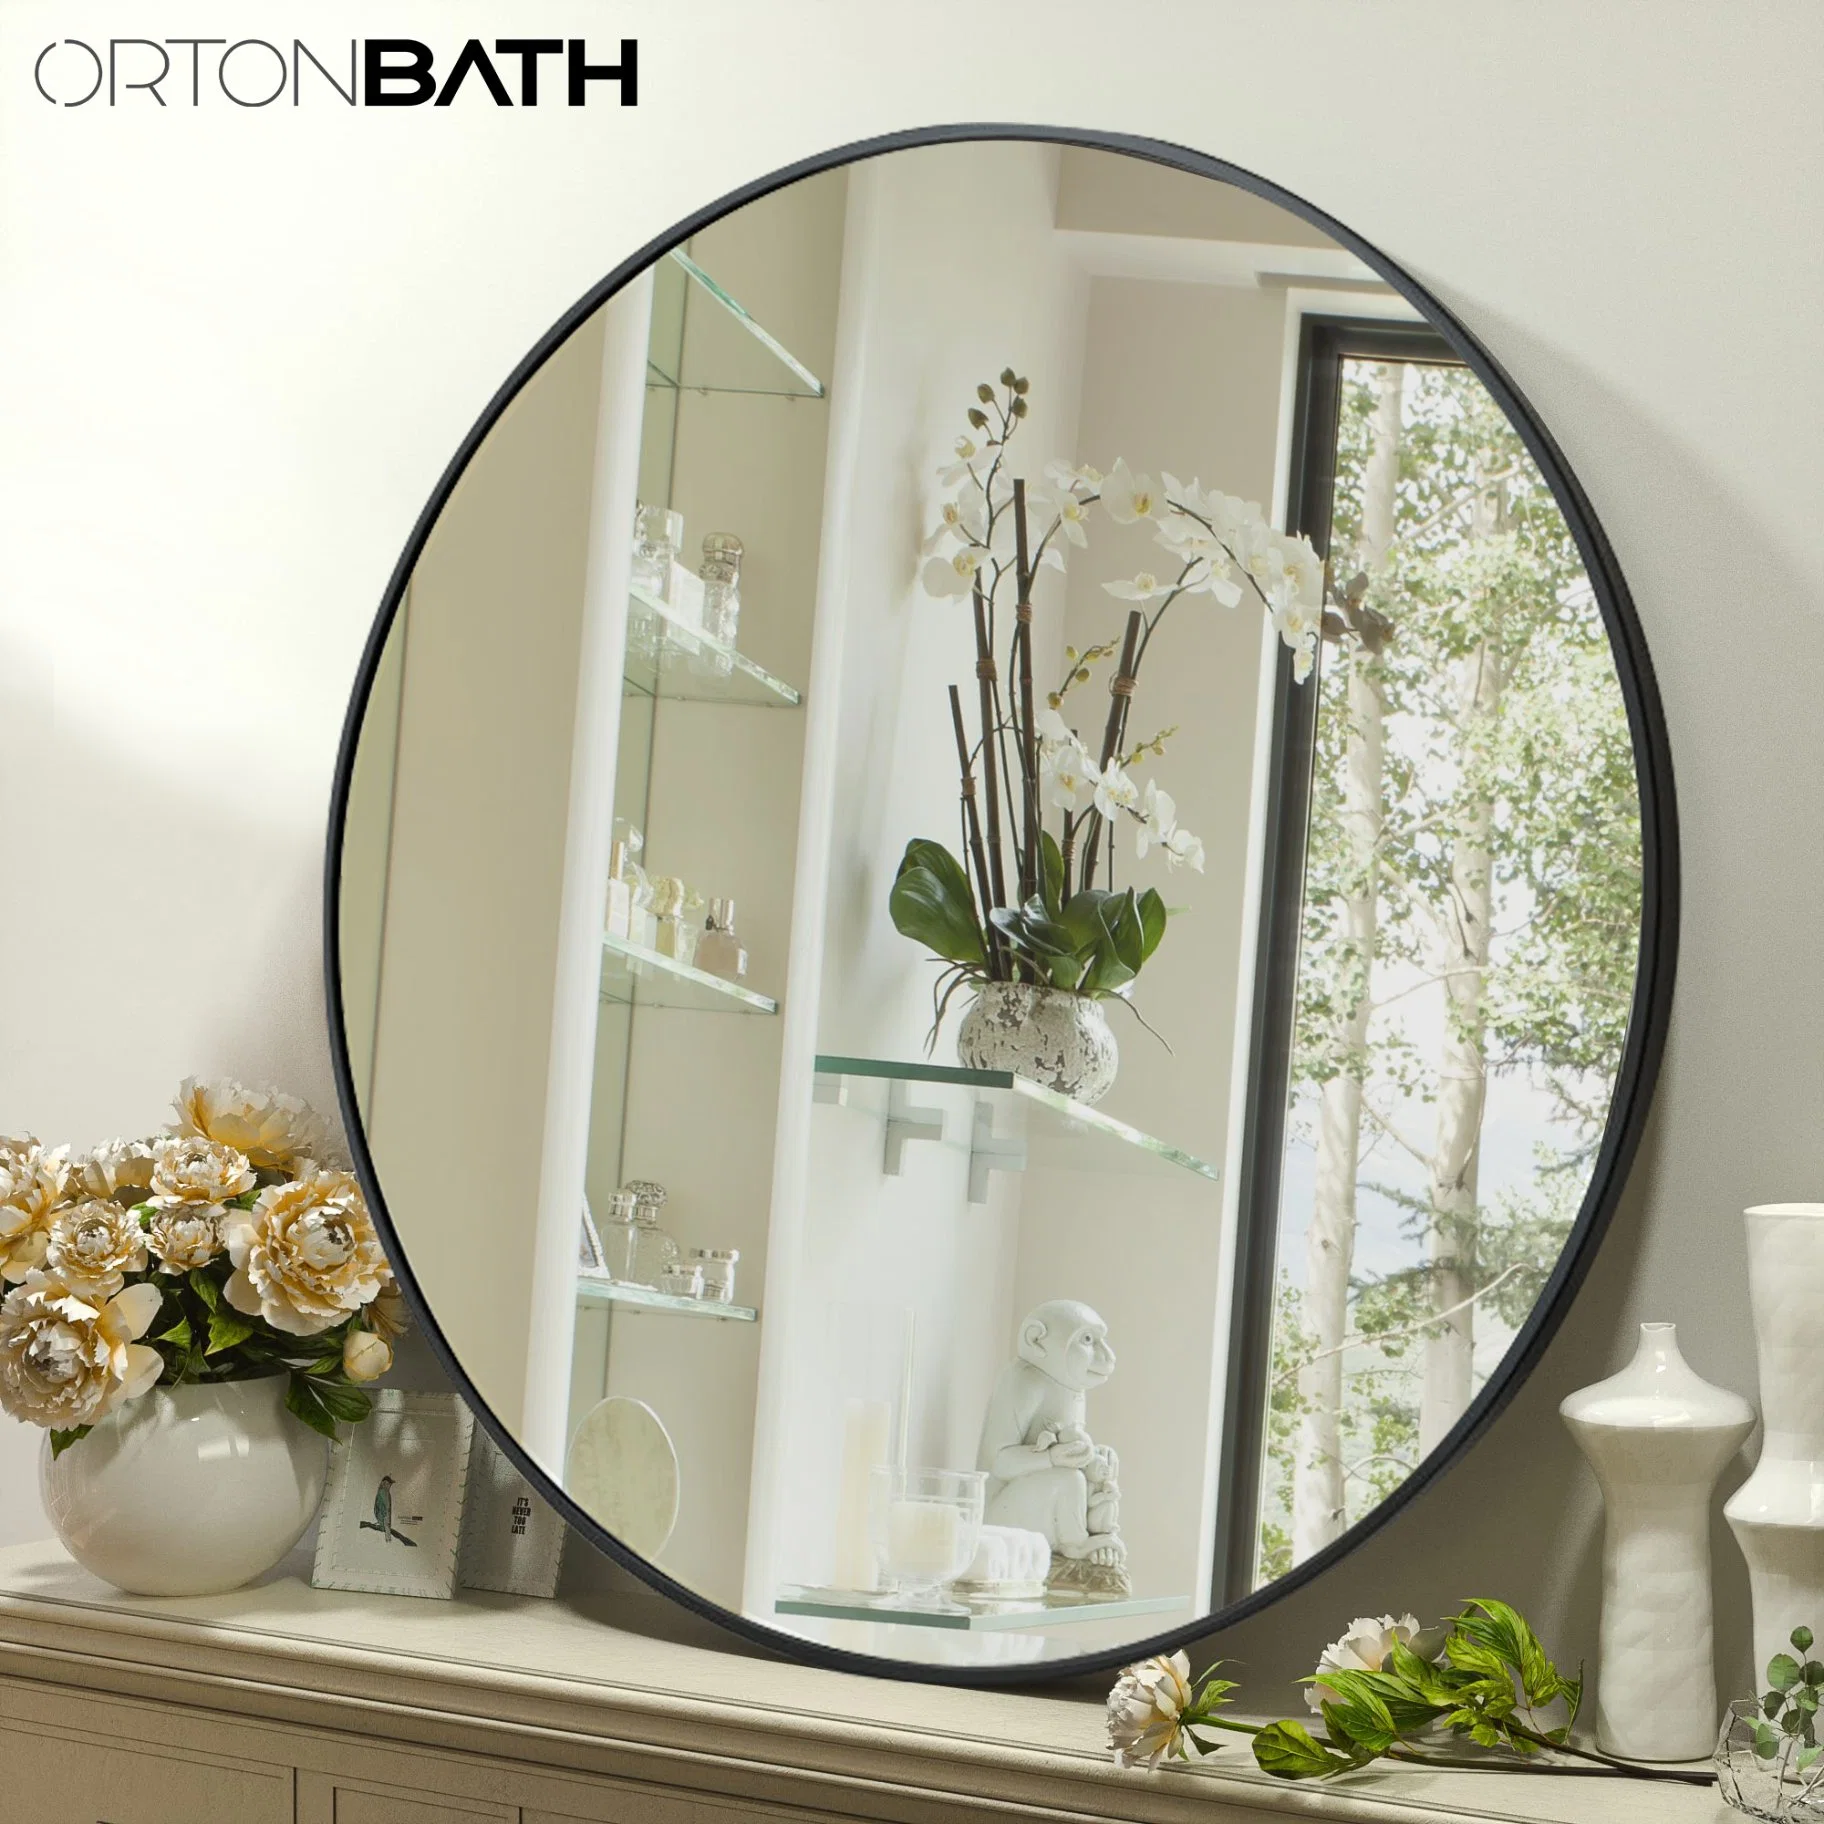 Ortonbath 20 Zoll Wand montiert hängenden Spiegel für Badezimmer mit Runde schwarze Metall Framer Runde Vanity Circle Spiegel für Bad